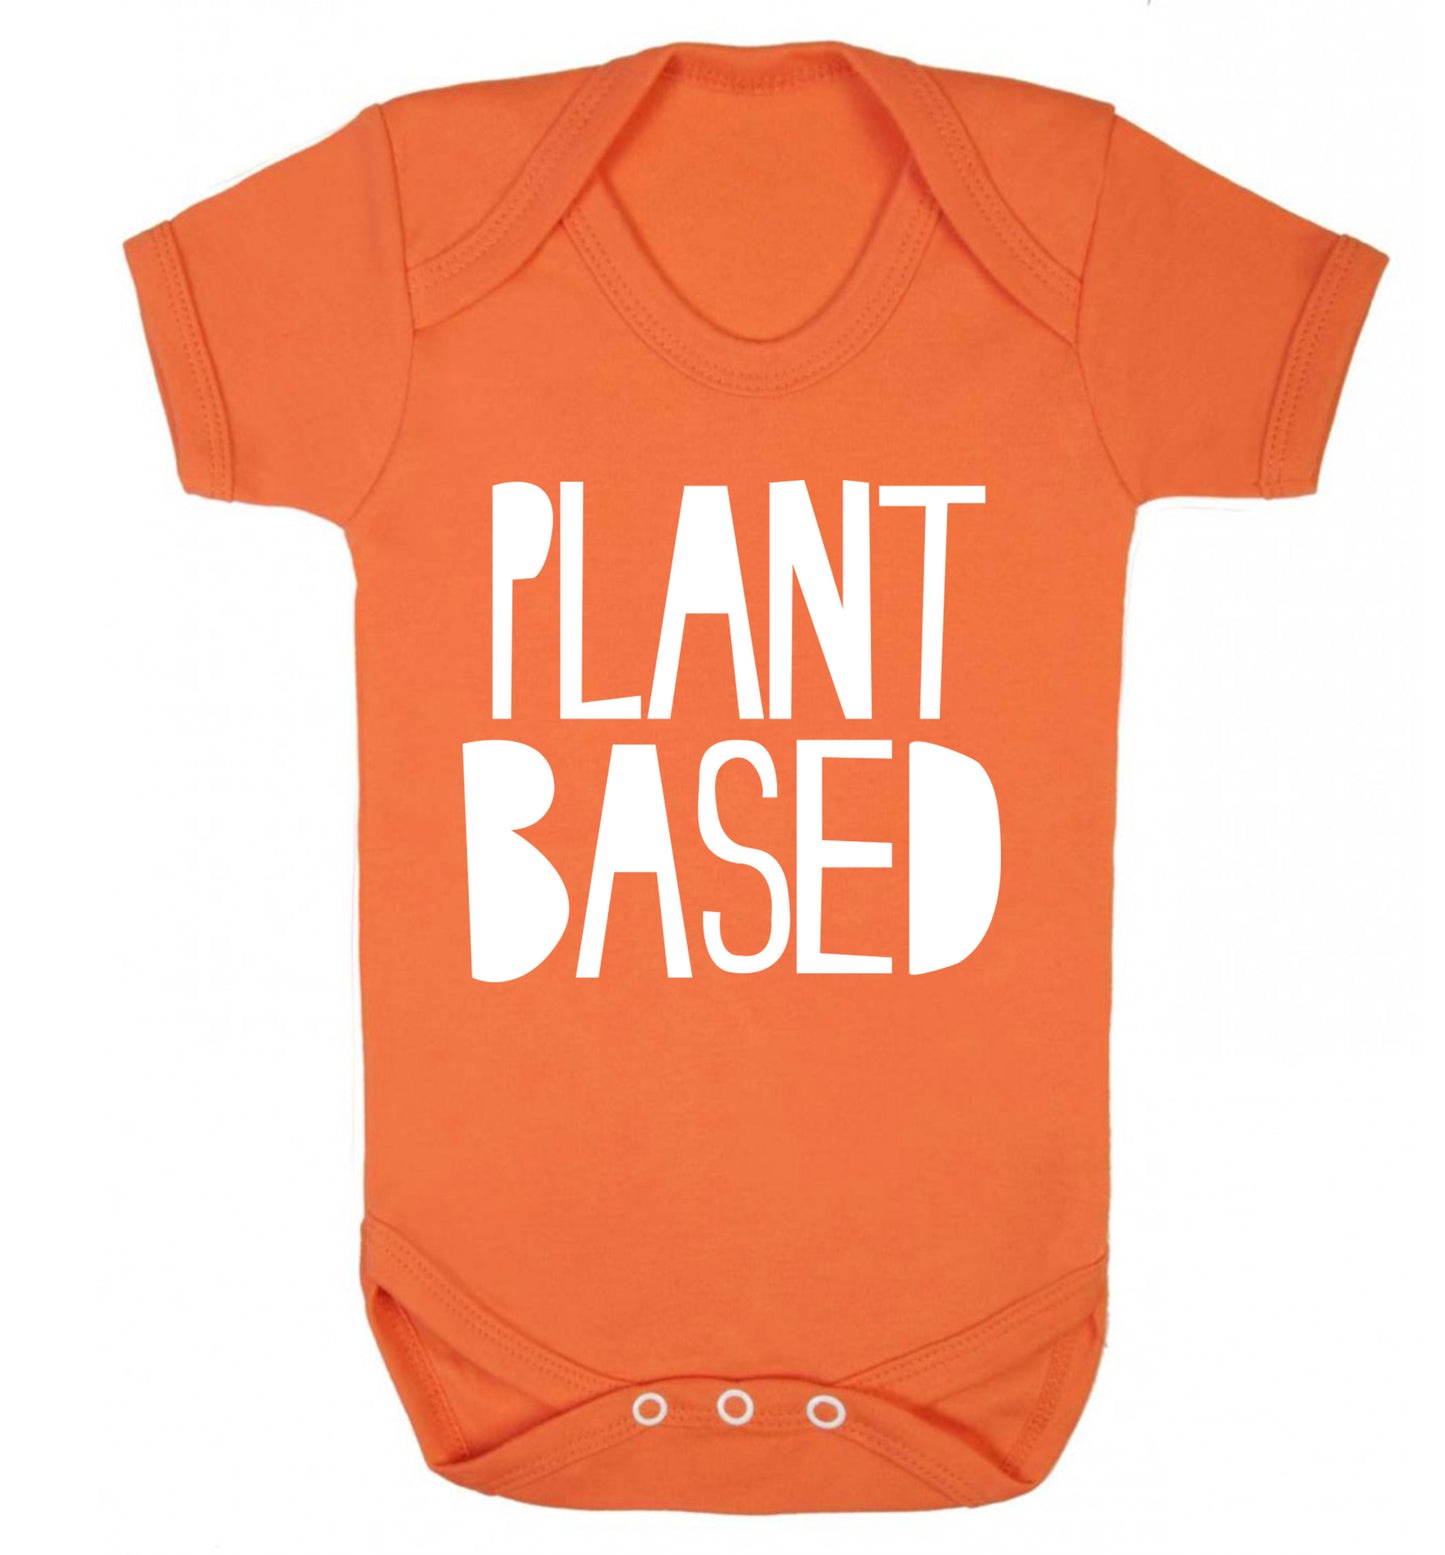 Plant Based Baby Vest orange 18-24 months